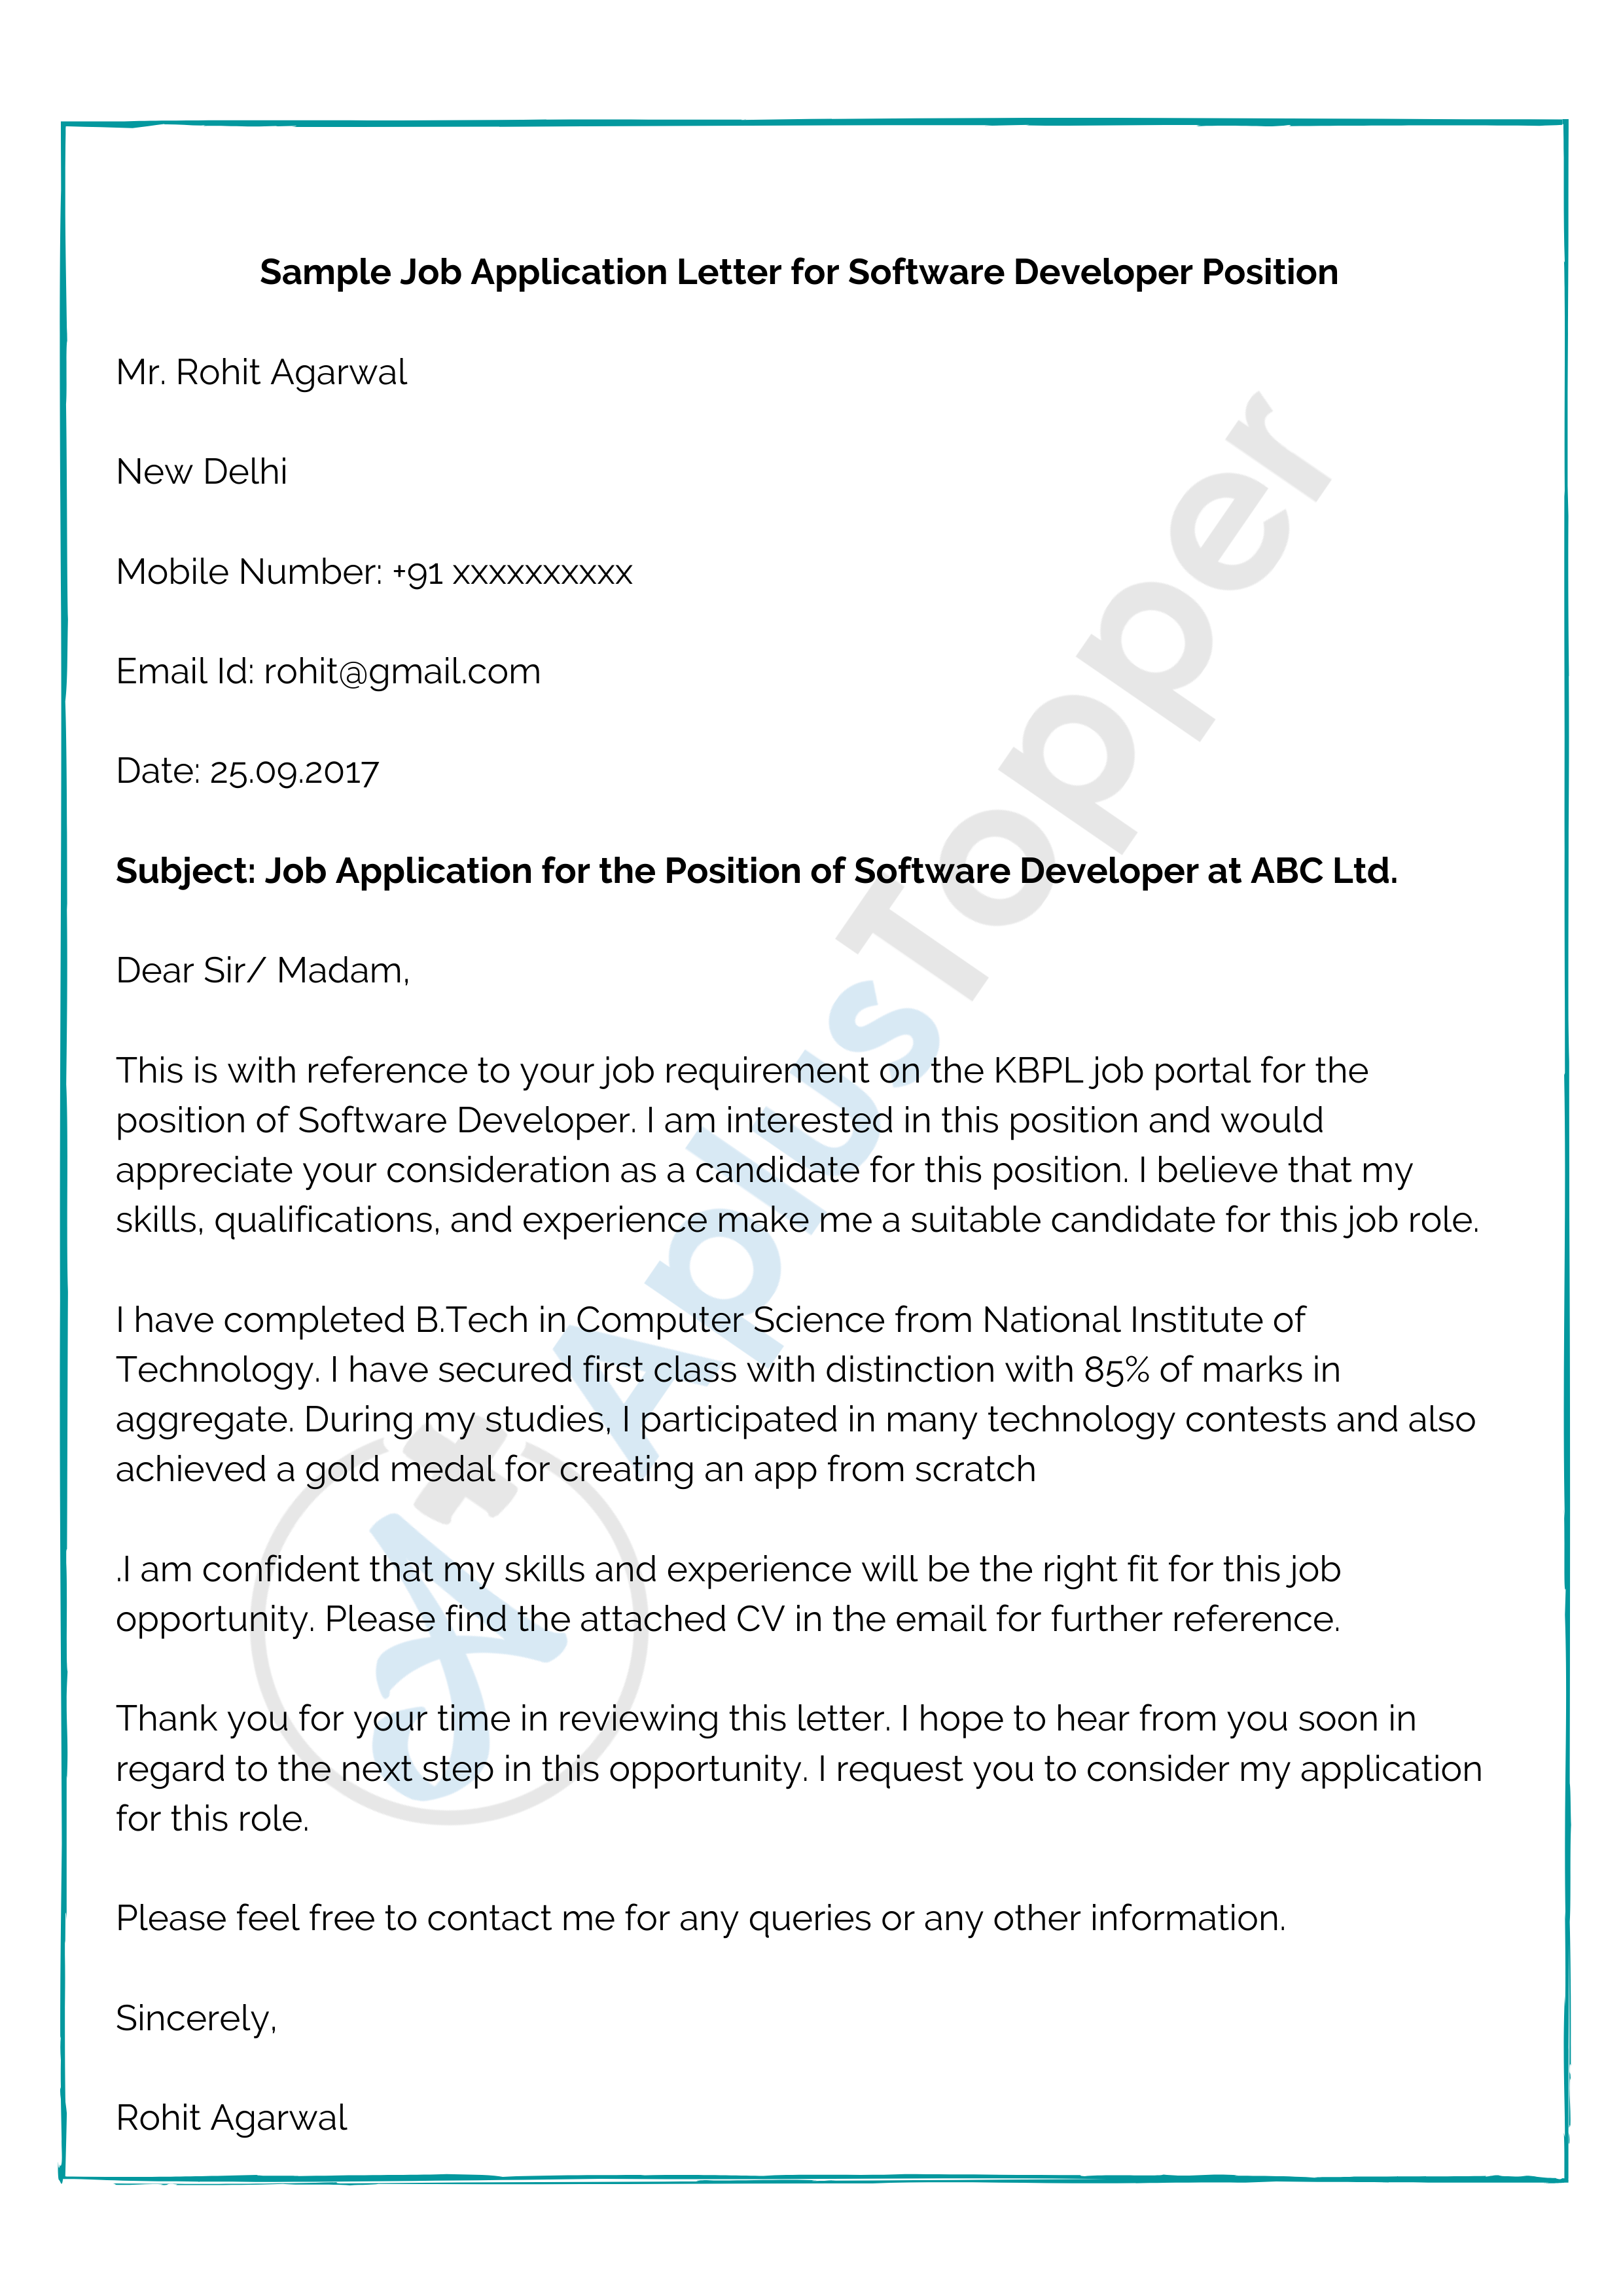 Exemple de lettre de demande d'emploi pour un poste de développeur de logiciels